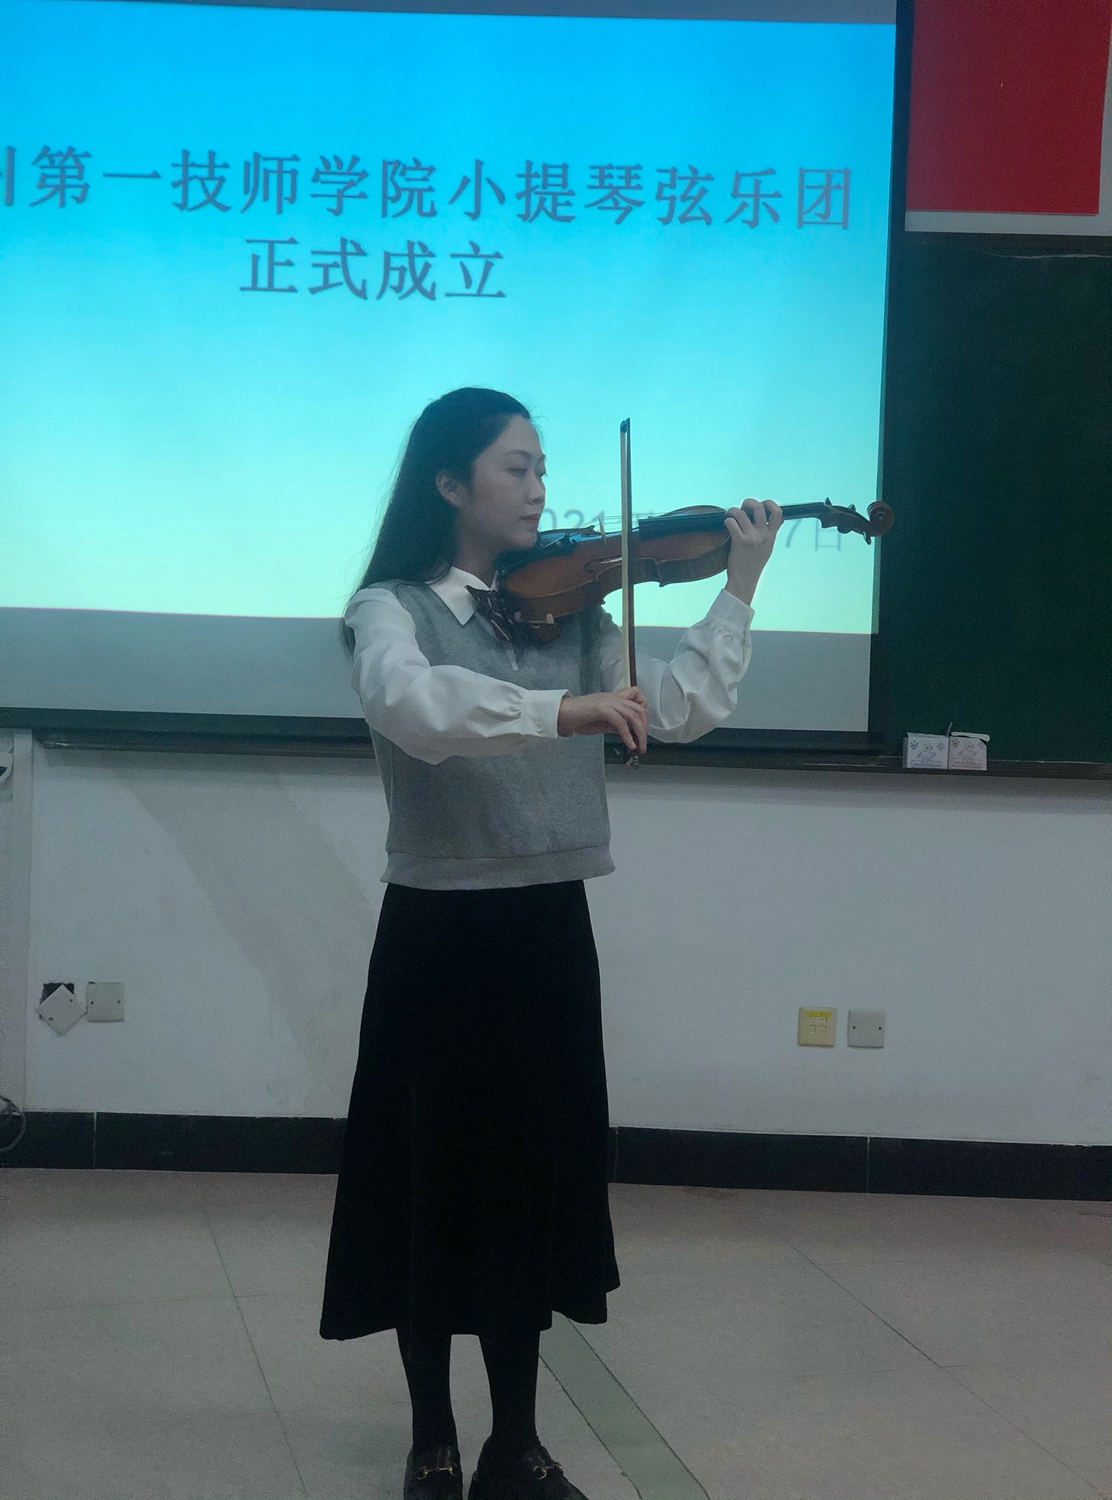 【弦乐团成立】福州第一技师学小提琴弦乐团成立(图2)